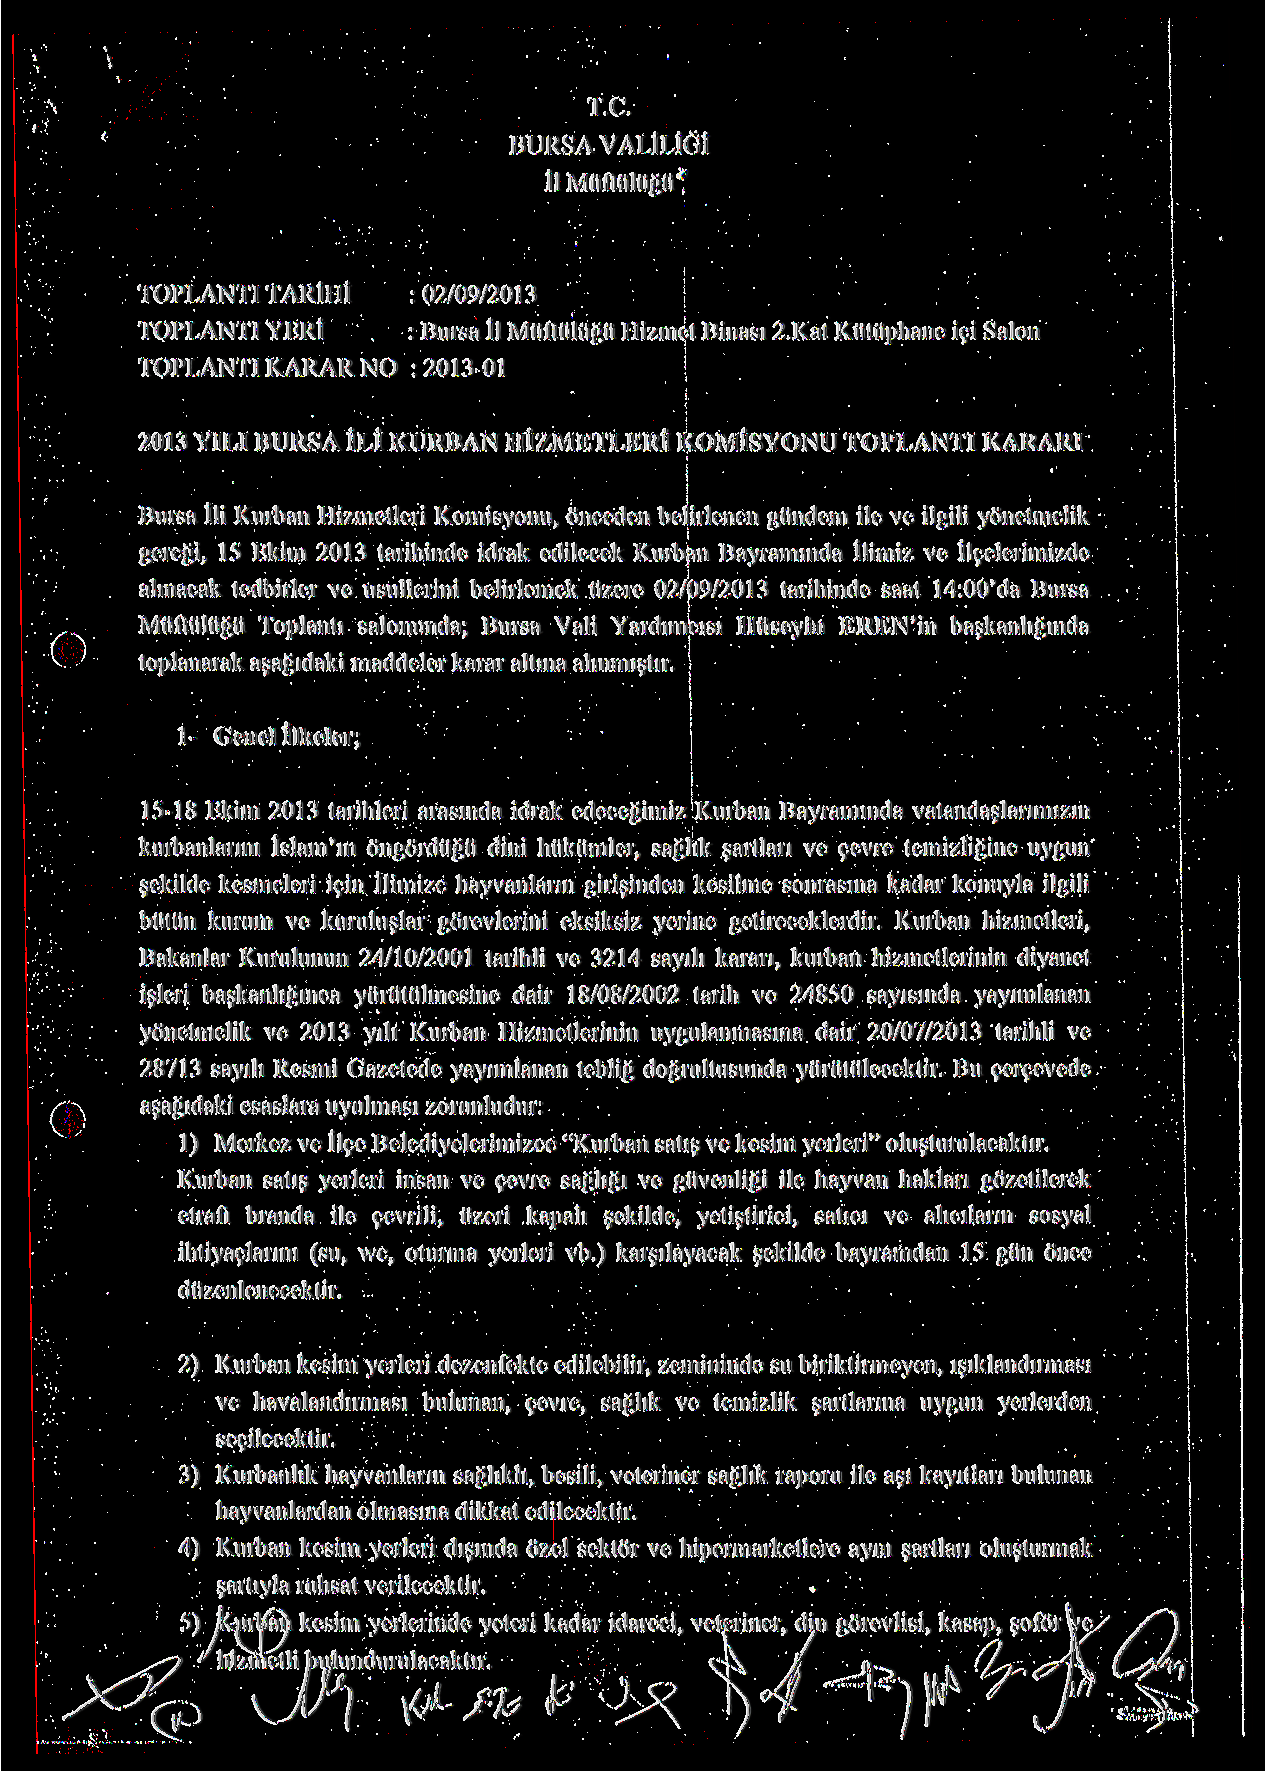 T.C. BURSA VALİLİĞİ İl Müftülüğü* TOPLANTI TARİIIİ : 02/09/2013 TOPLANTI YERİ : Bursa İl Müftülüğü Hizmet Binası 2.